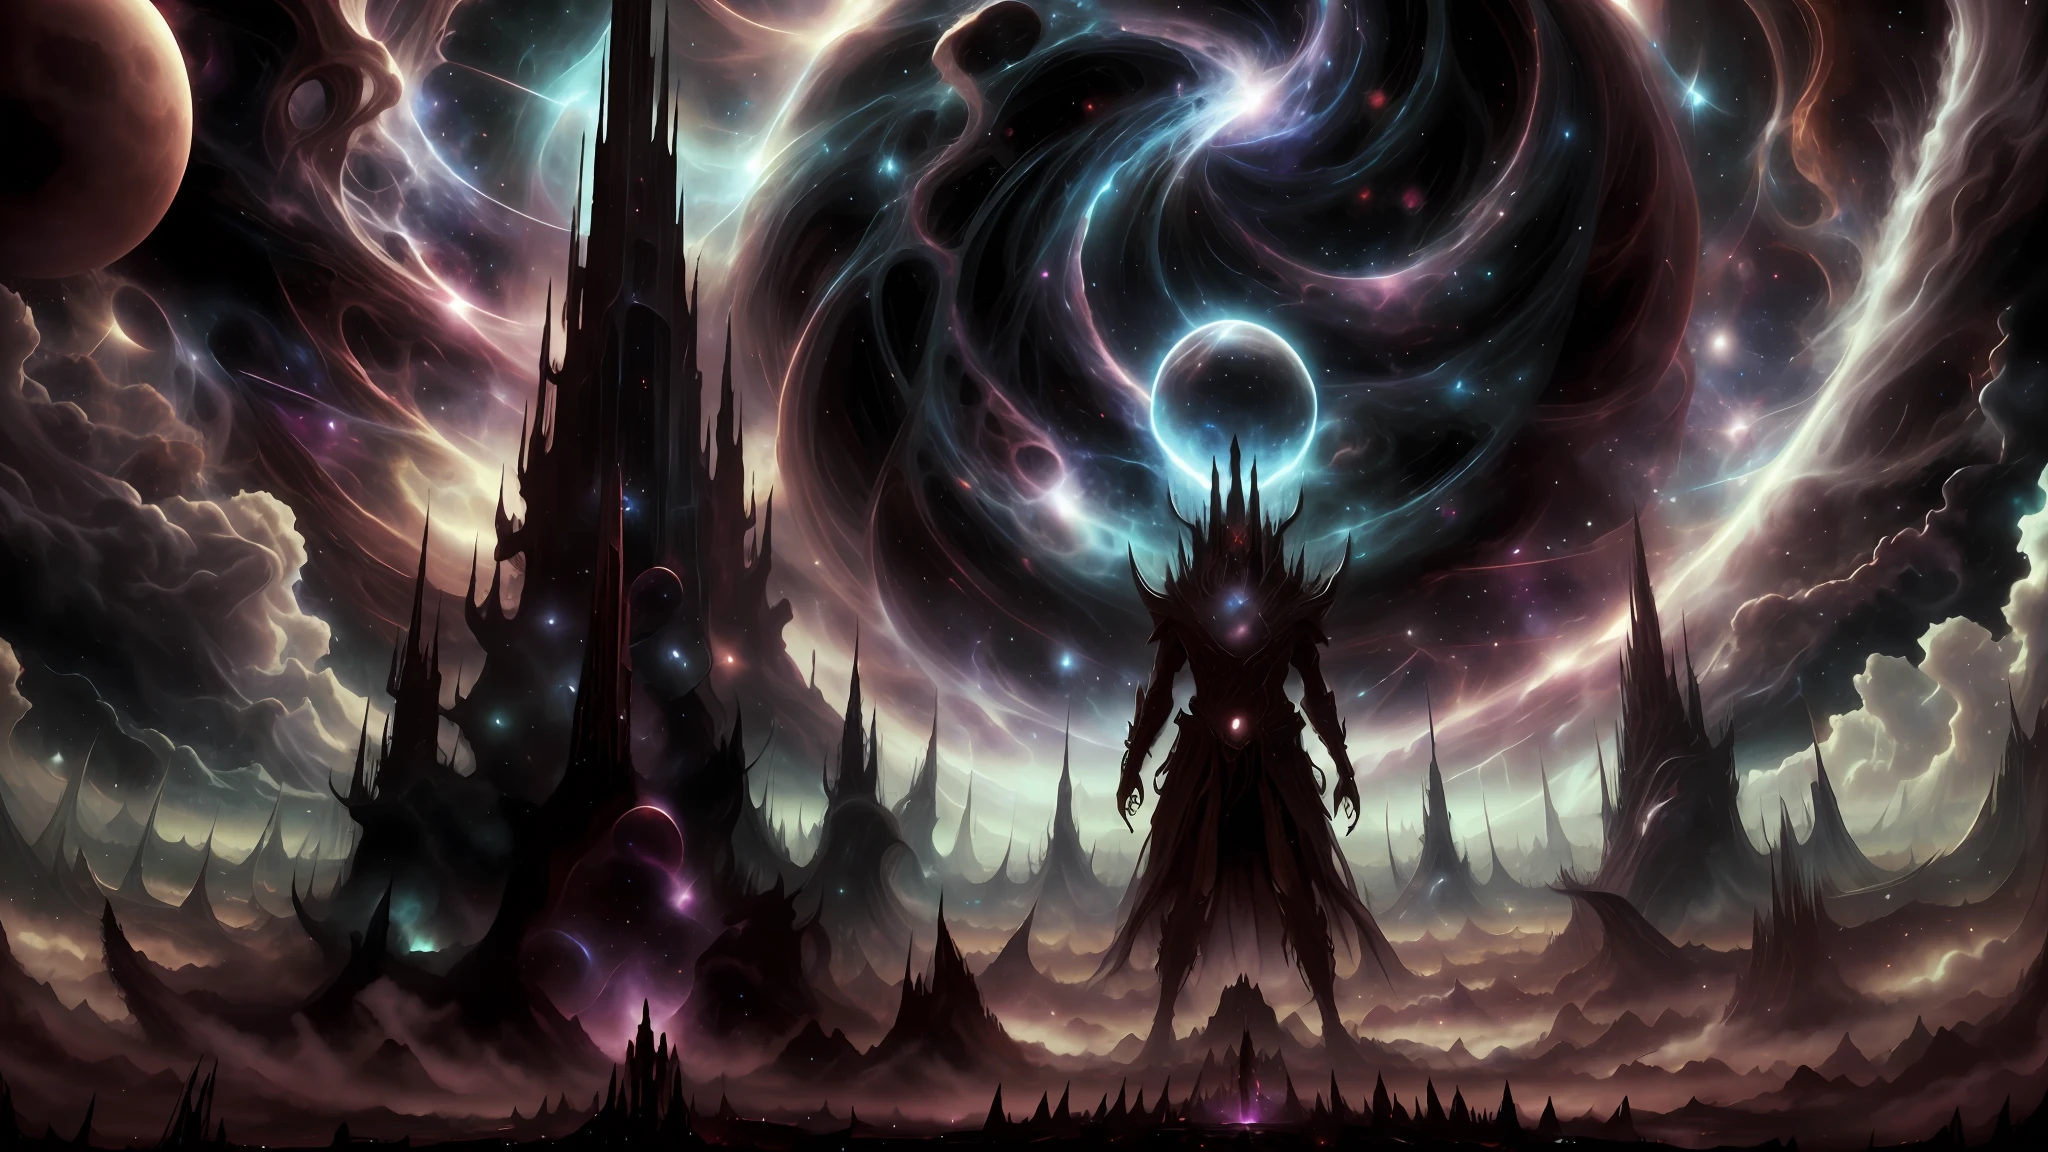 Космический Бог-творец формирует темный фантастический мир из хаоса ранней вселенной.